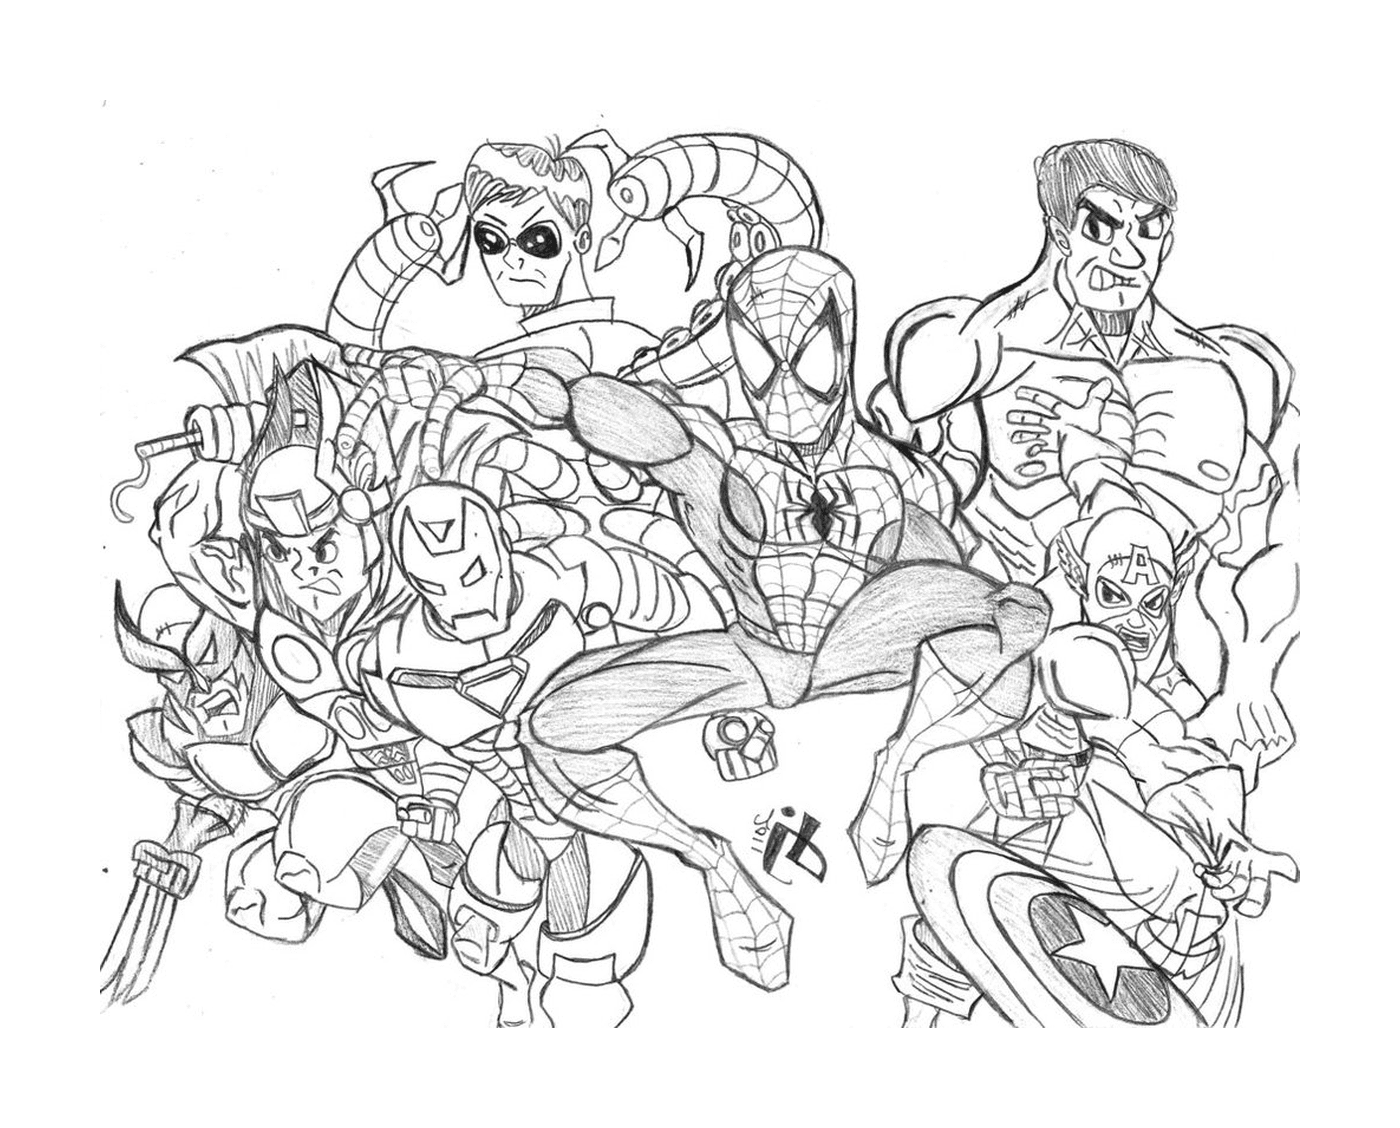  Группа супергероев нарисована 